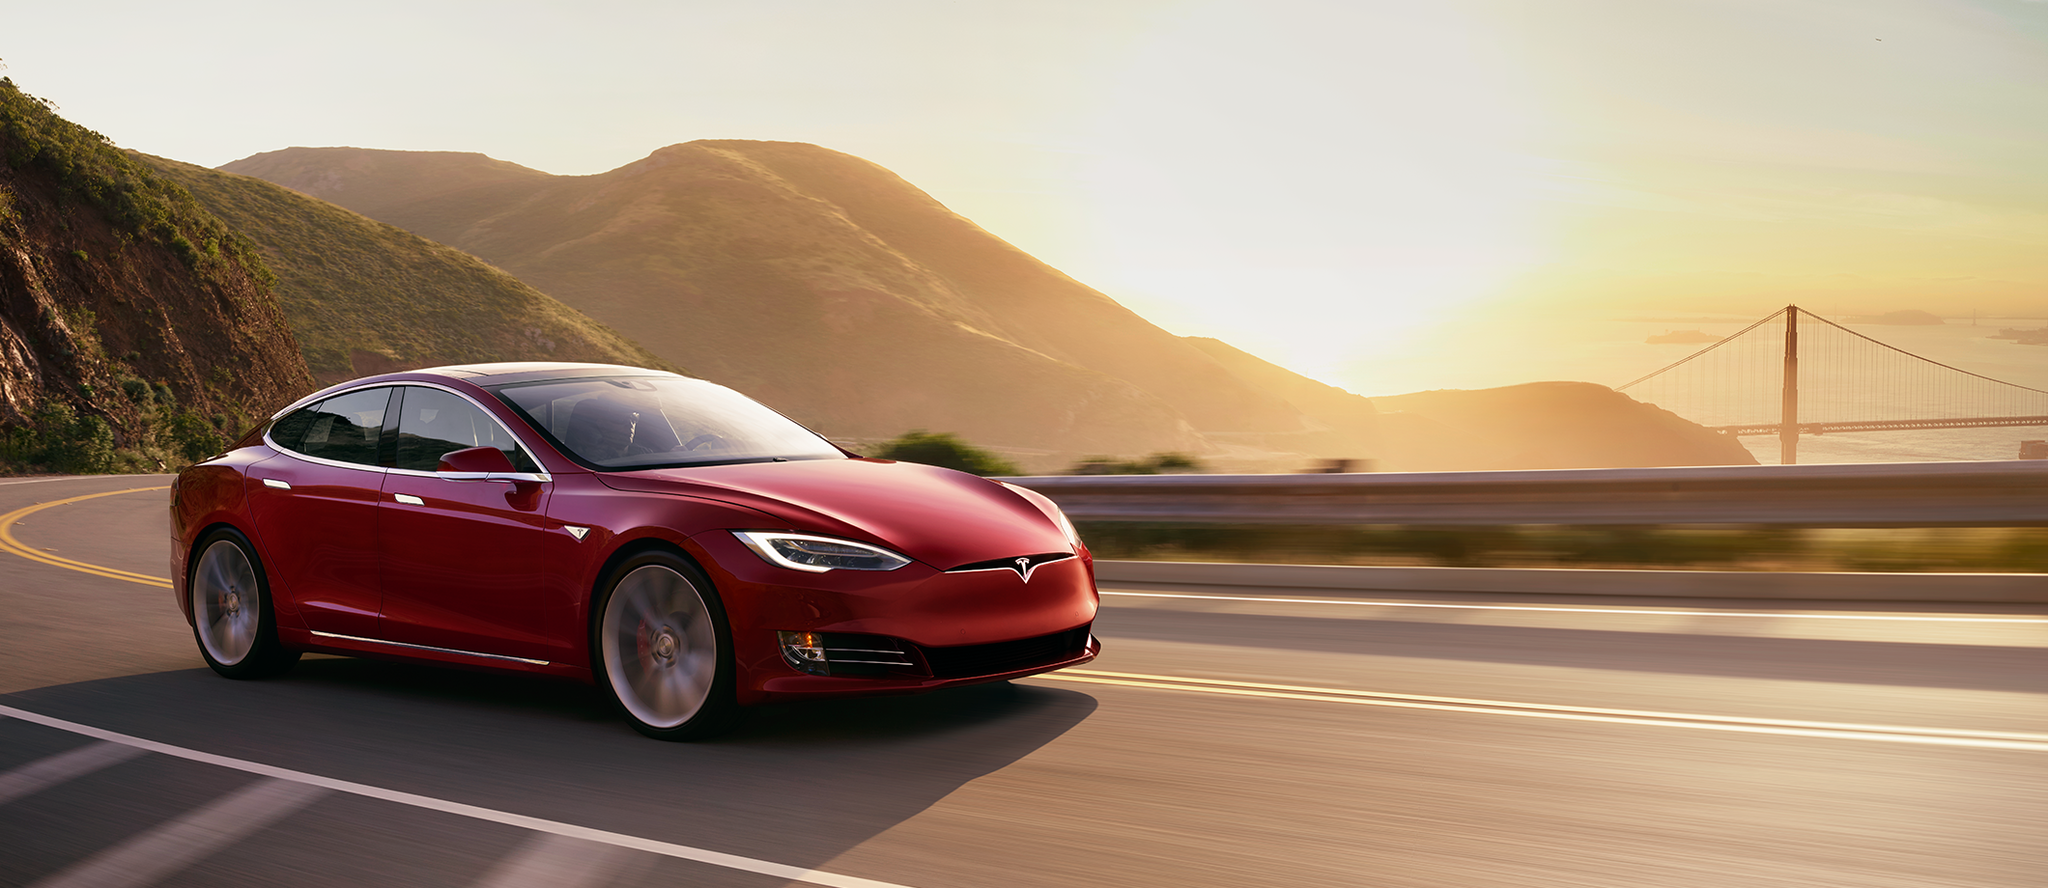 Llega el Tesla más bestia: el Model S Plaid superará los 1.100 caballos